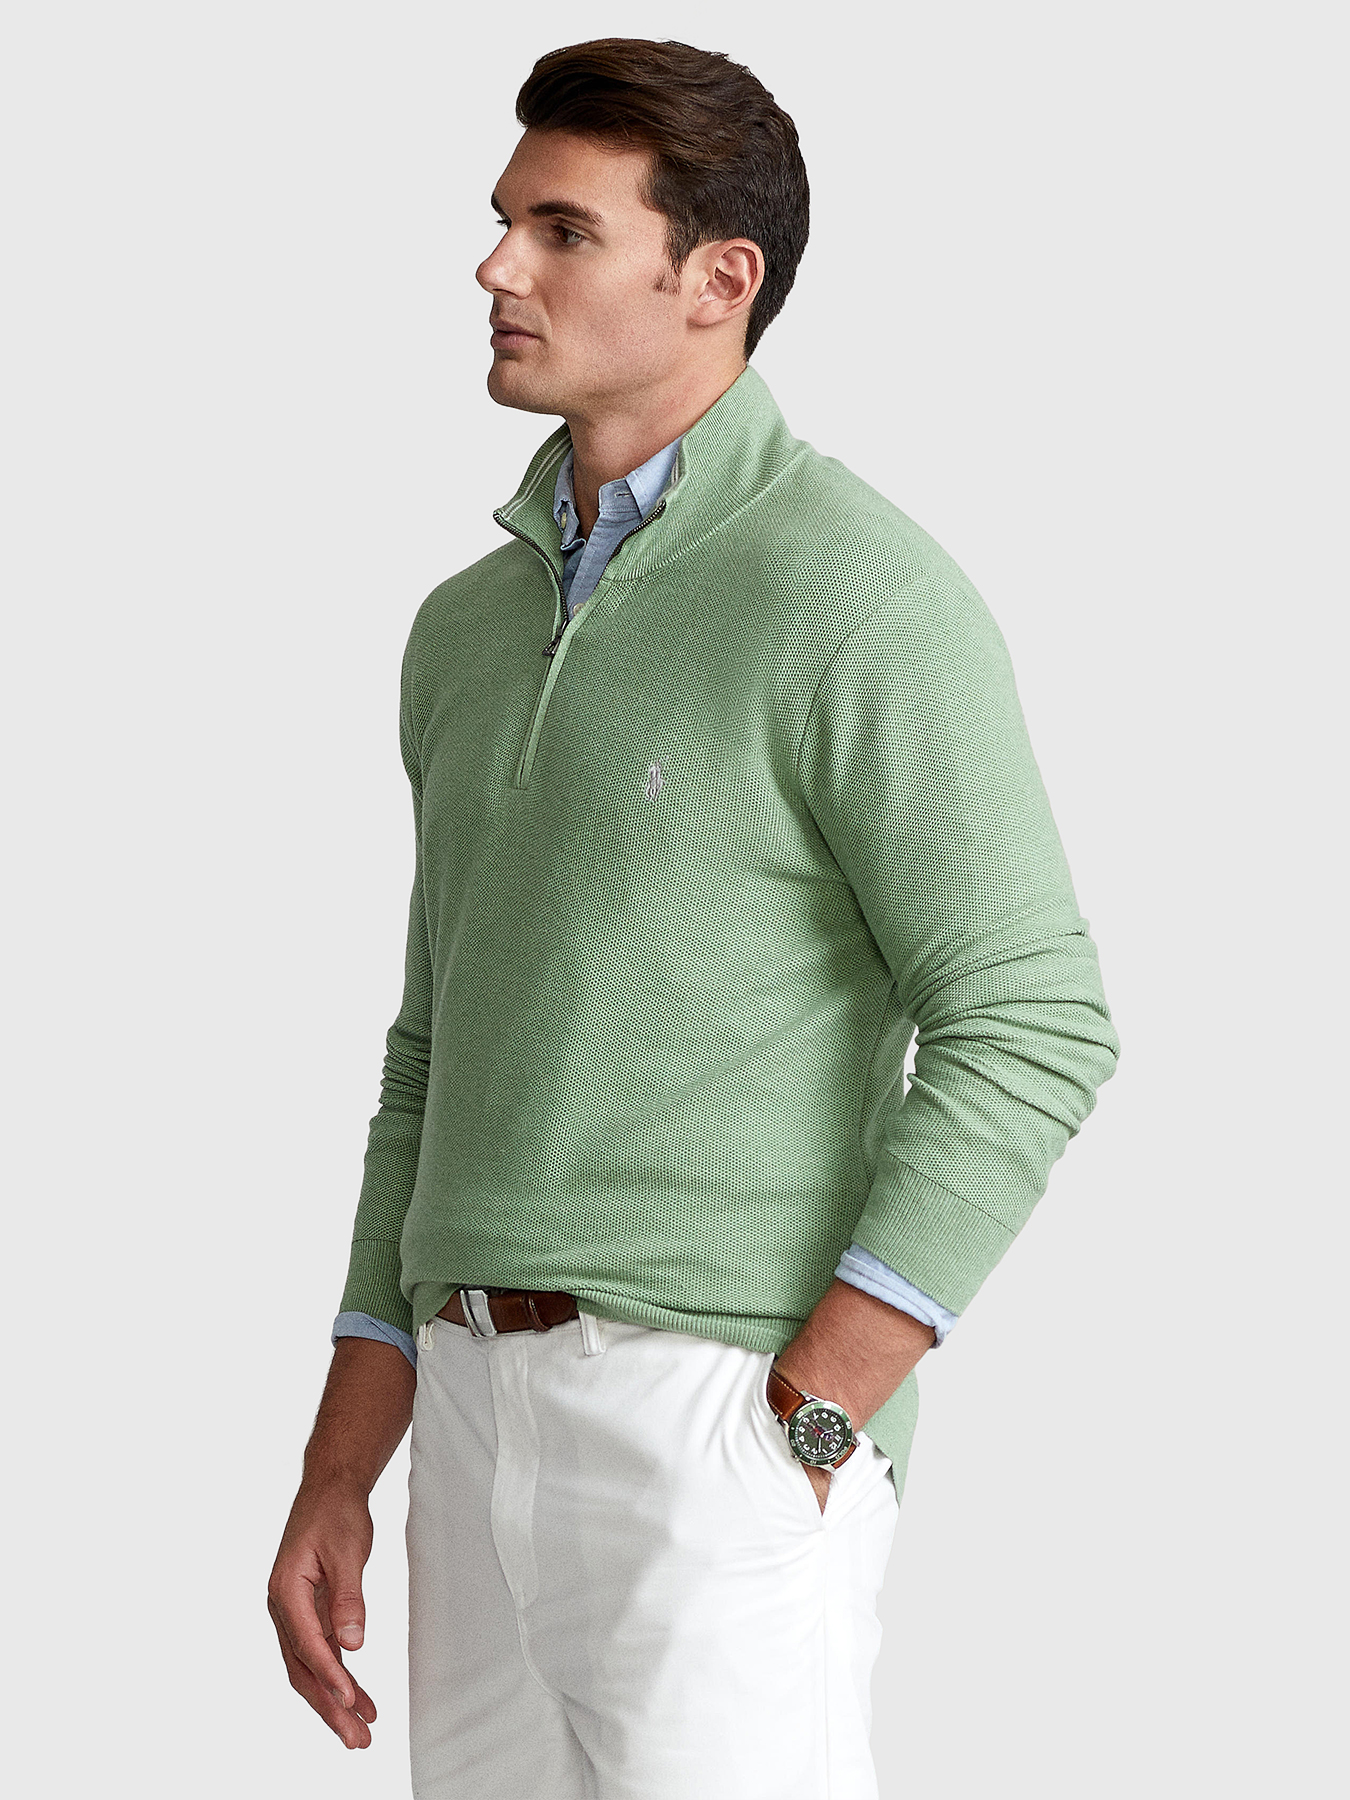 Green sweater with zip brand POLO RALPH LAUREN — /en